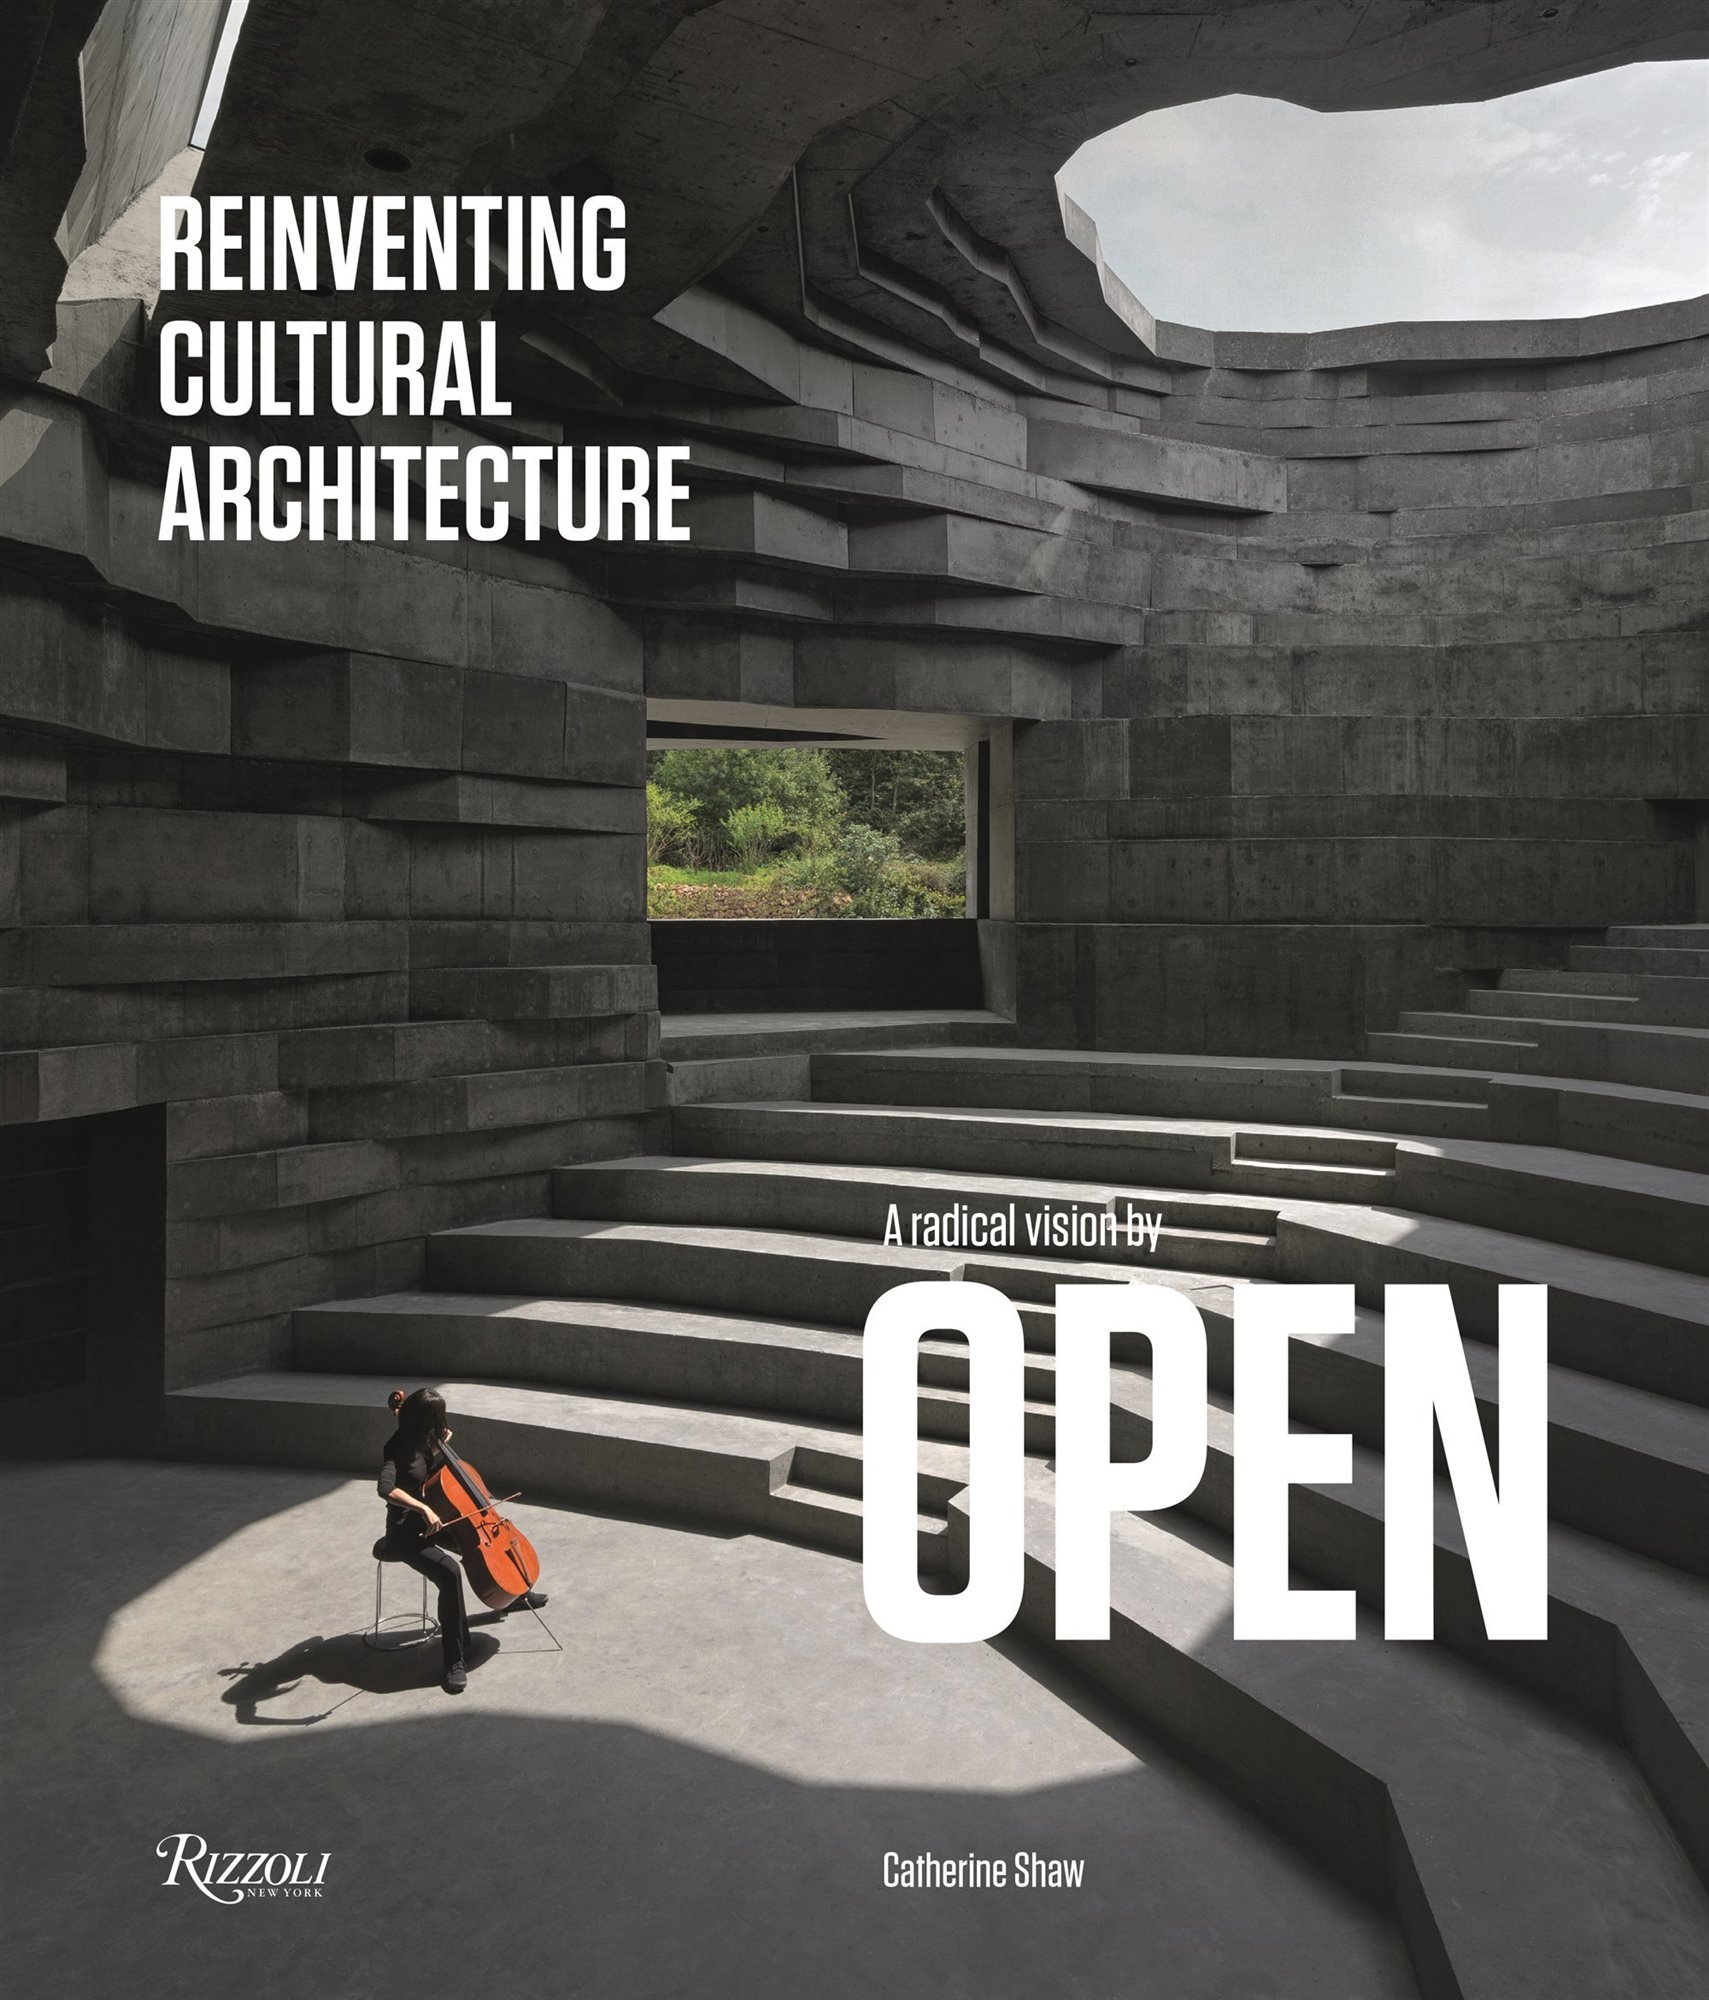 Libro Reinventando la arquitectura en China. Portada del libro `Reinventando la arquitectura cultural: una visión radical de OPEN´